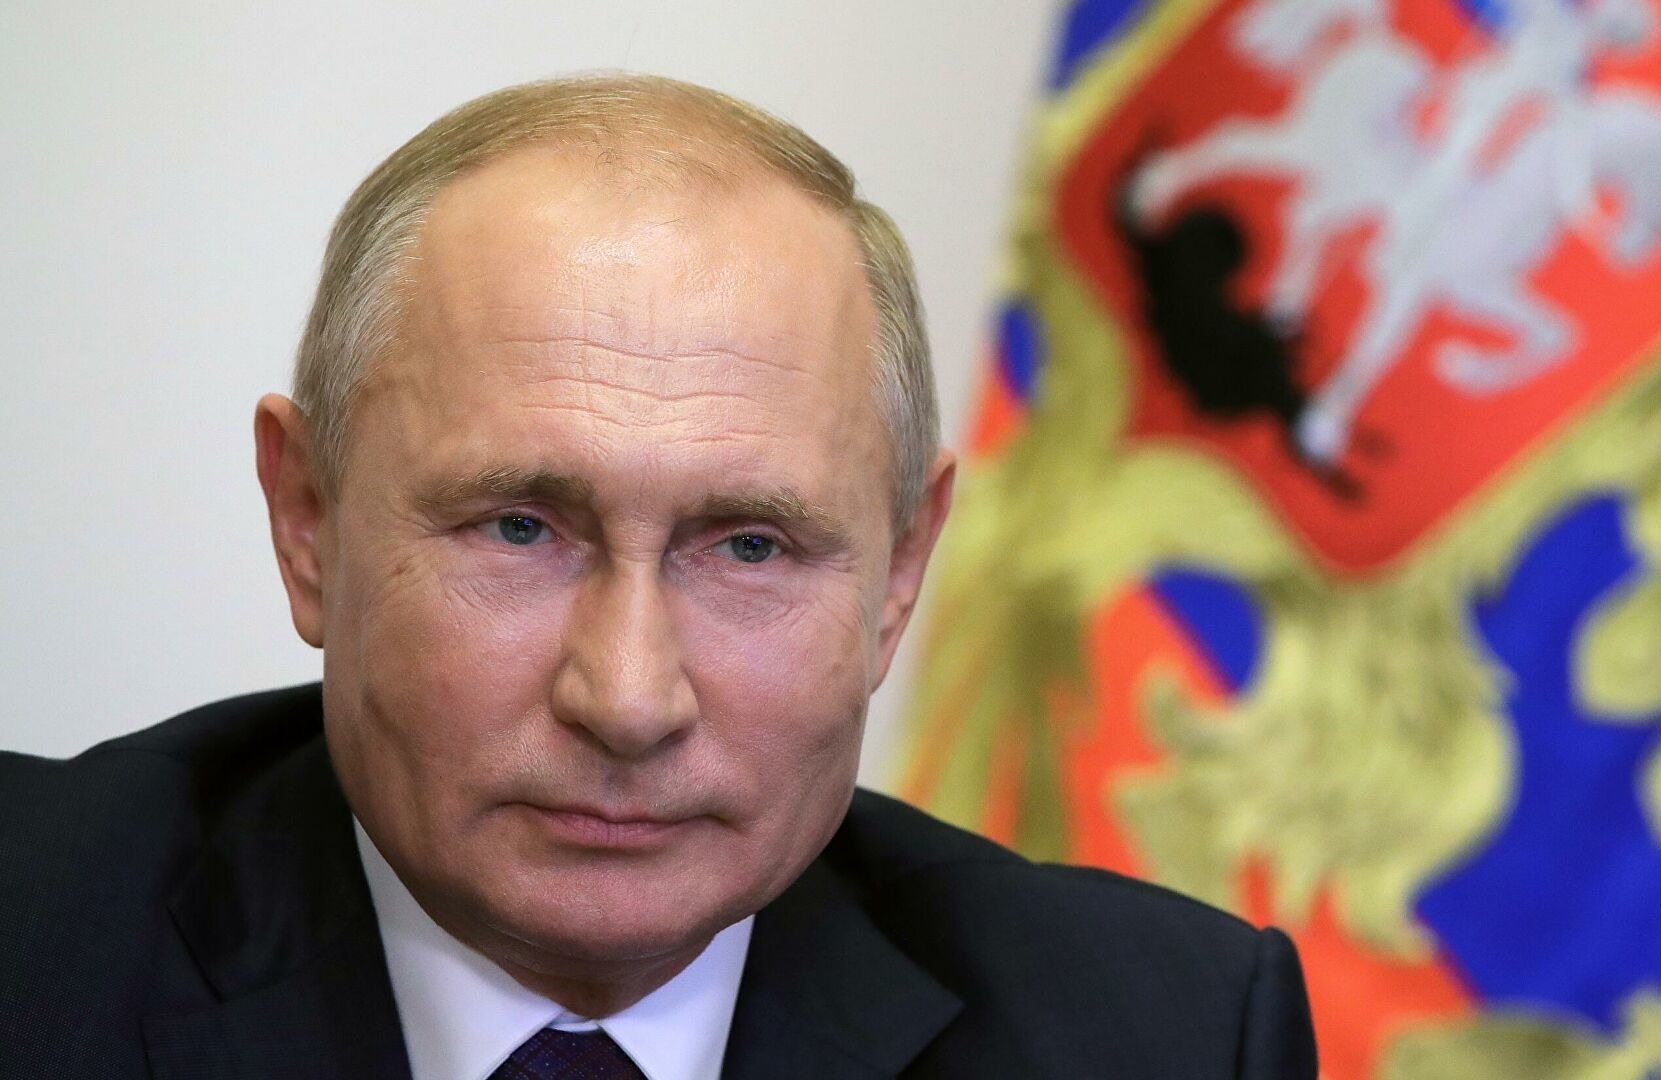 Путин: санкции заставили РФ заниматься развитием собственных продуктов